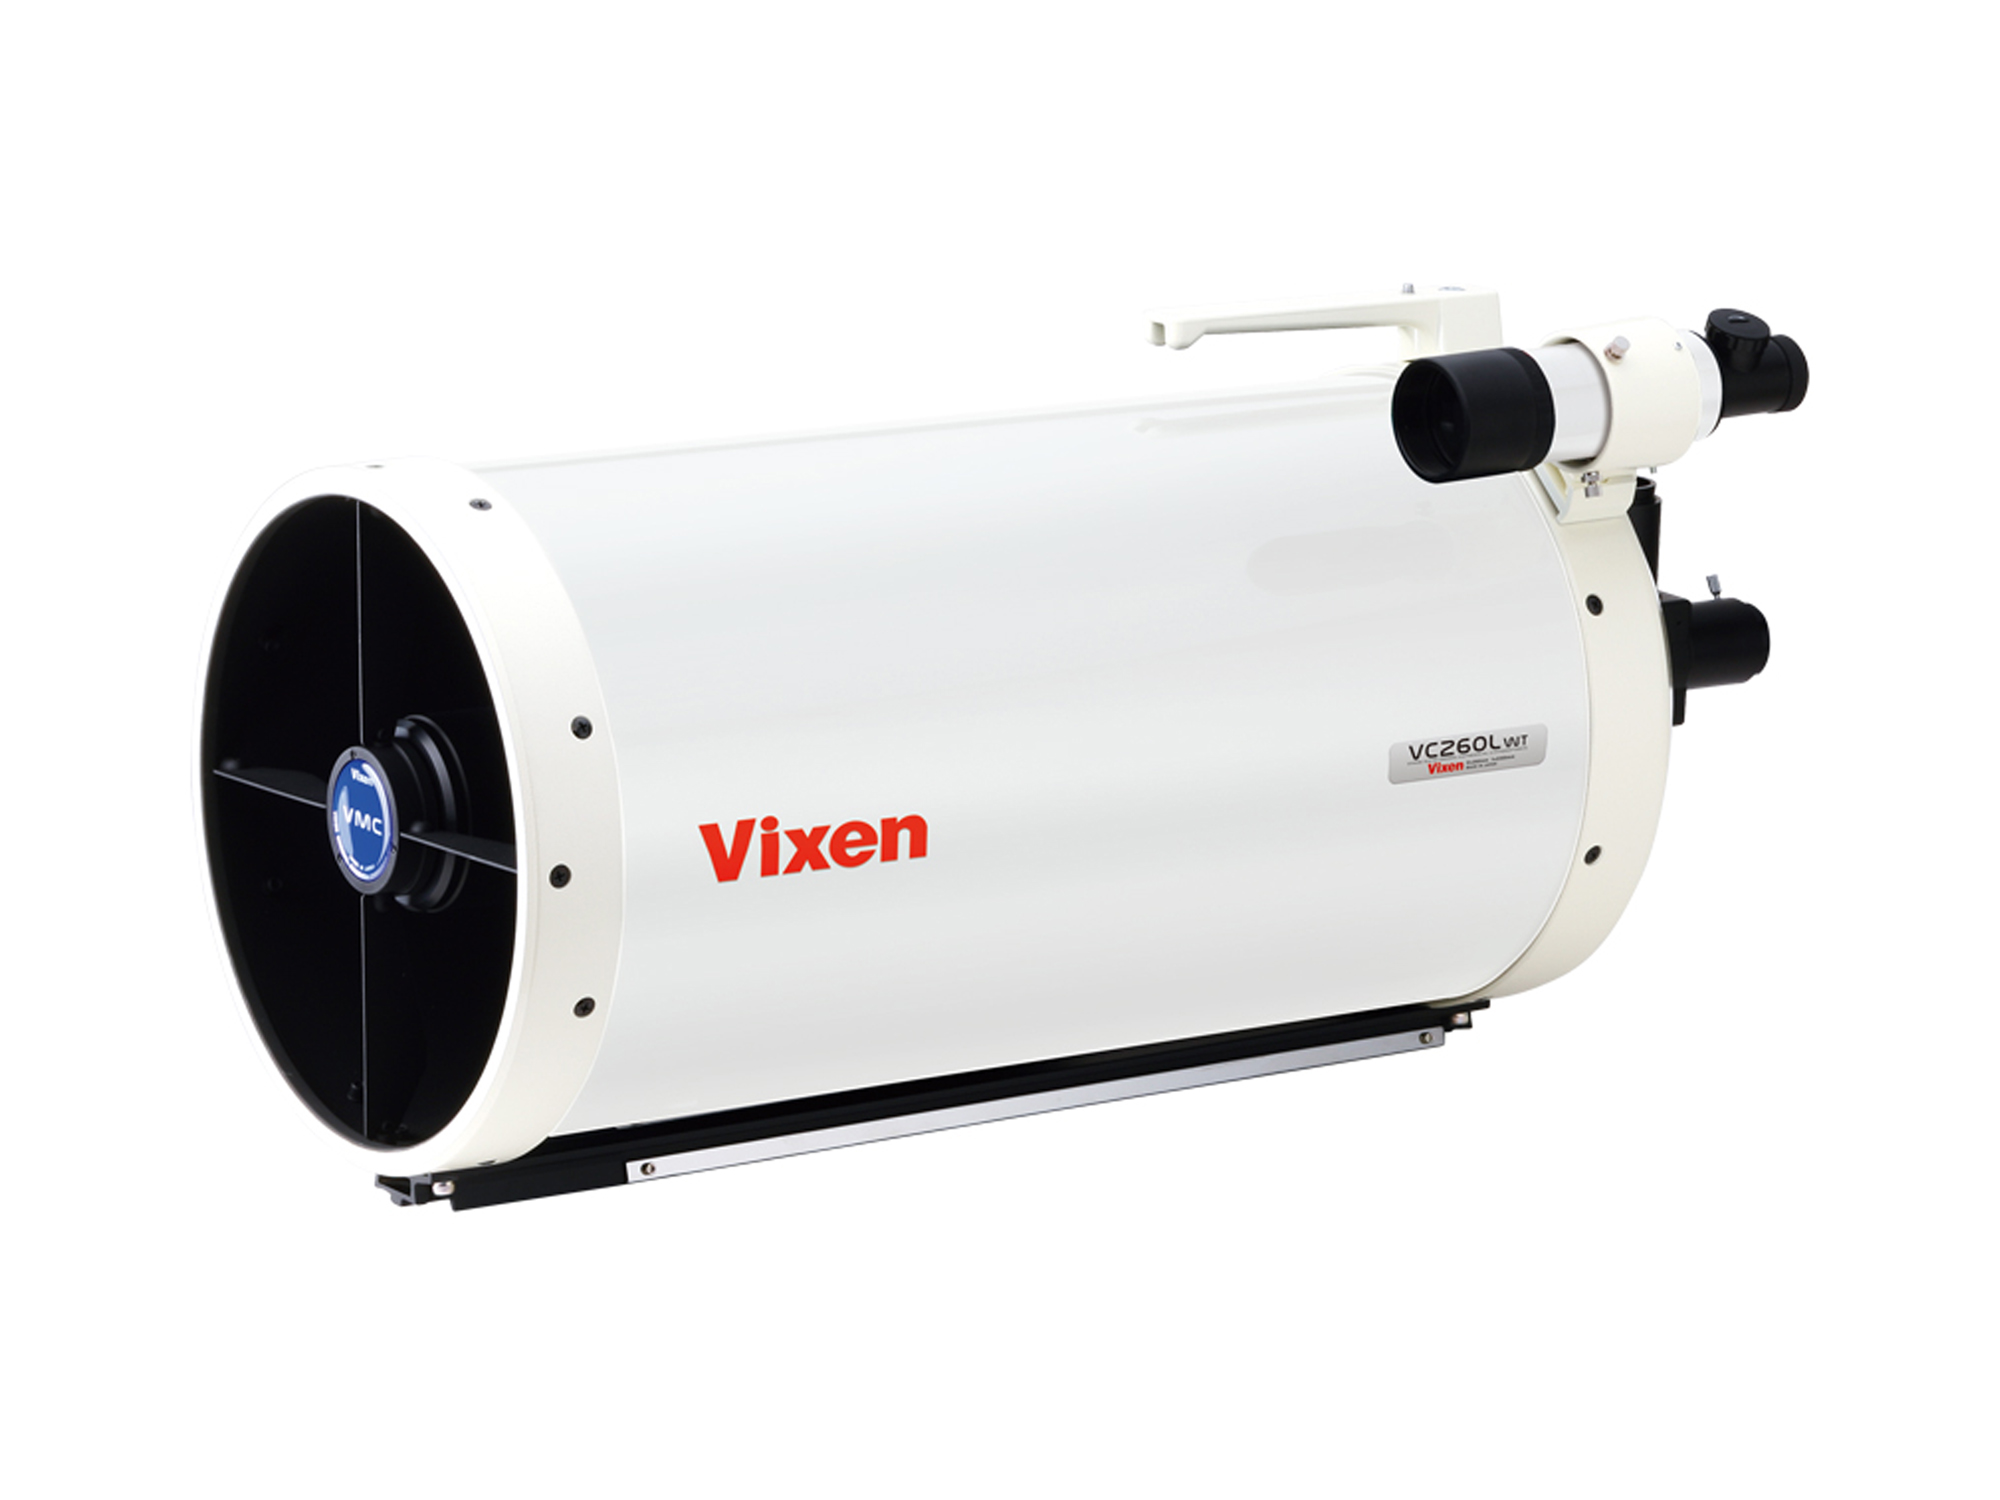 Vixen AXD2 con Telescopio VMC 260 Maksutov-Kassegrain